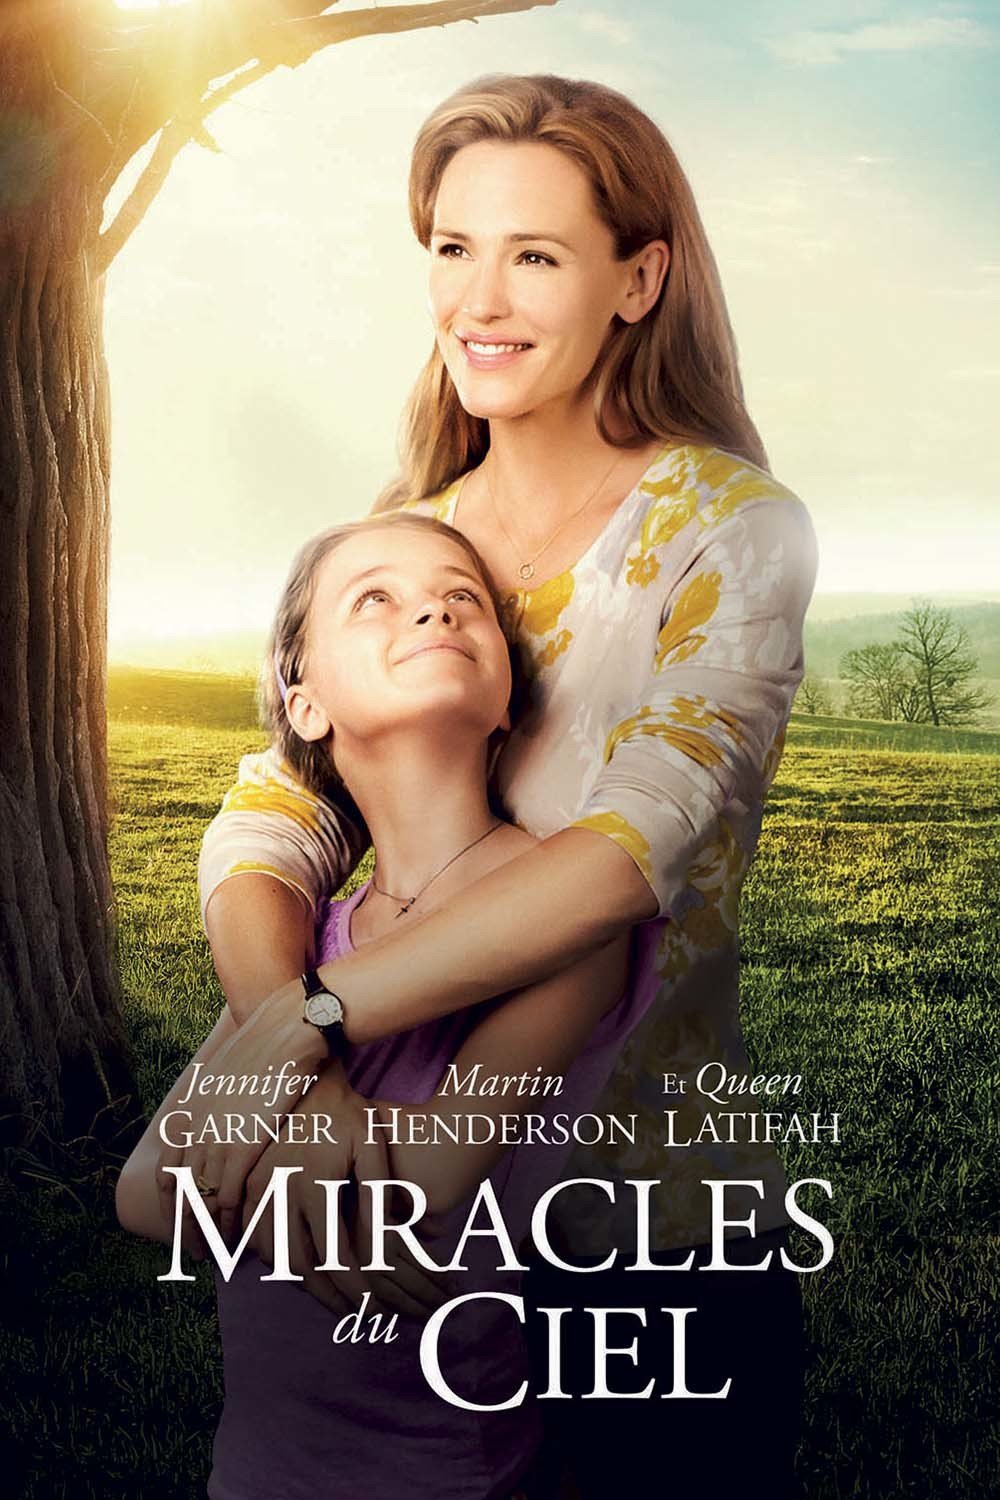 ดูหนังออนไลน์ฟรี Miracles from Heaven (2016) ปาฏิหาริย์แห่งสวรรค์